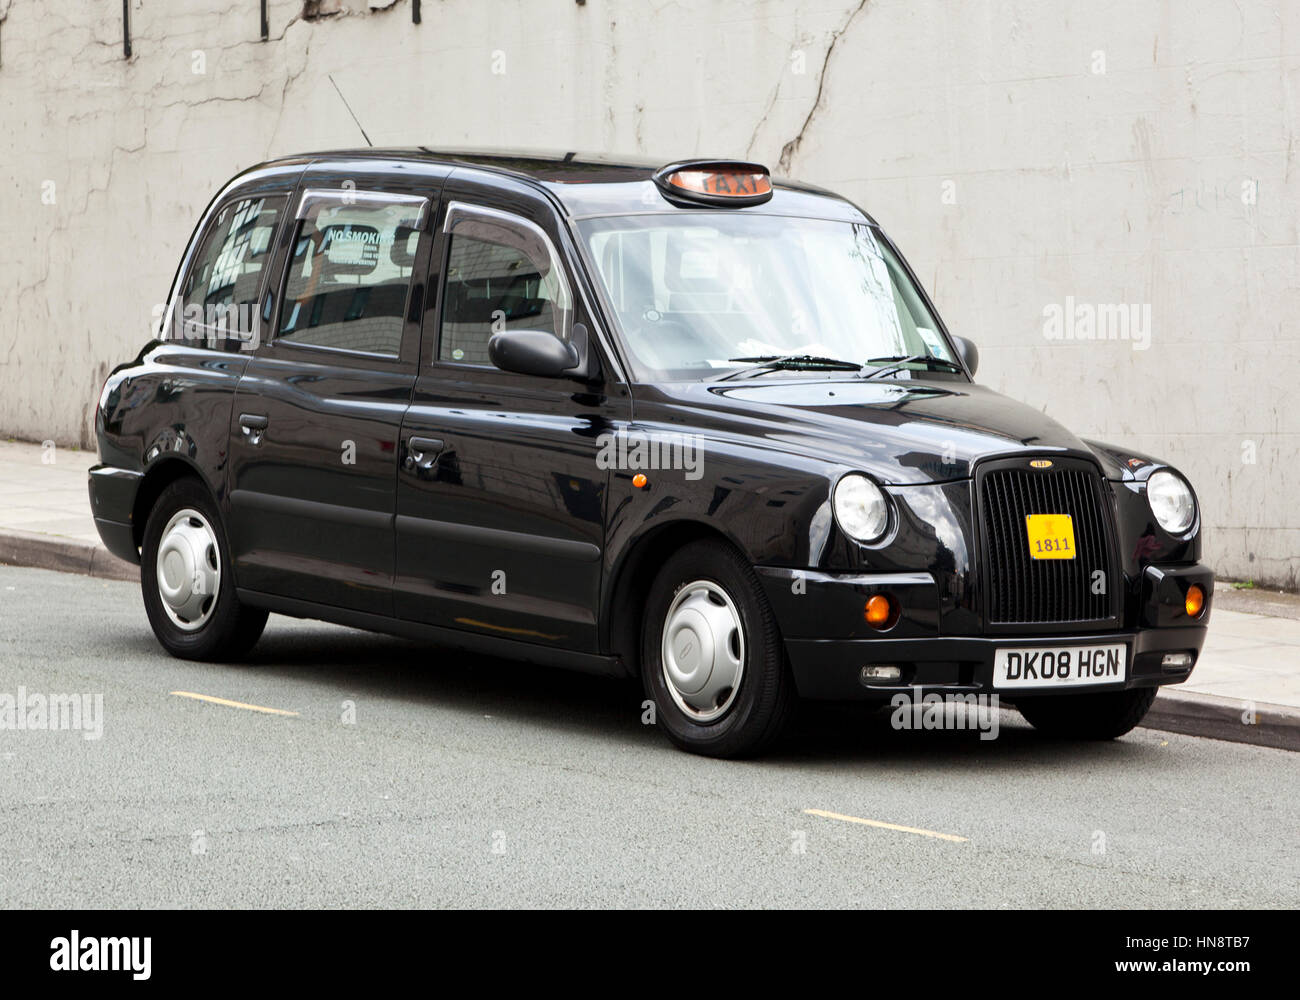 Liverpool, England - 12. Juli 2011: Typisch britischen Taxi Cab von LTI (London Taxi International) parkten in einer Seitenstraße von Liverpool hergestellt. Stockfoto